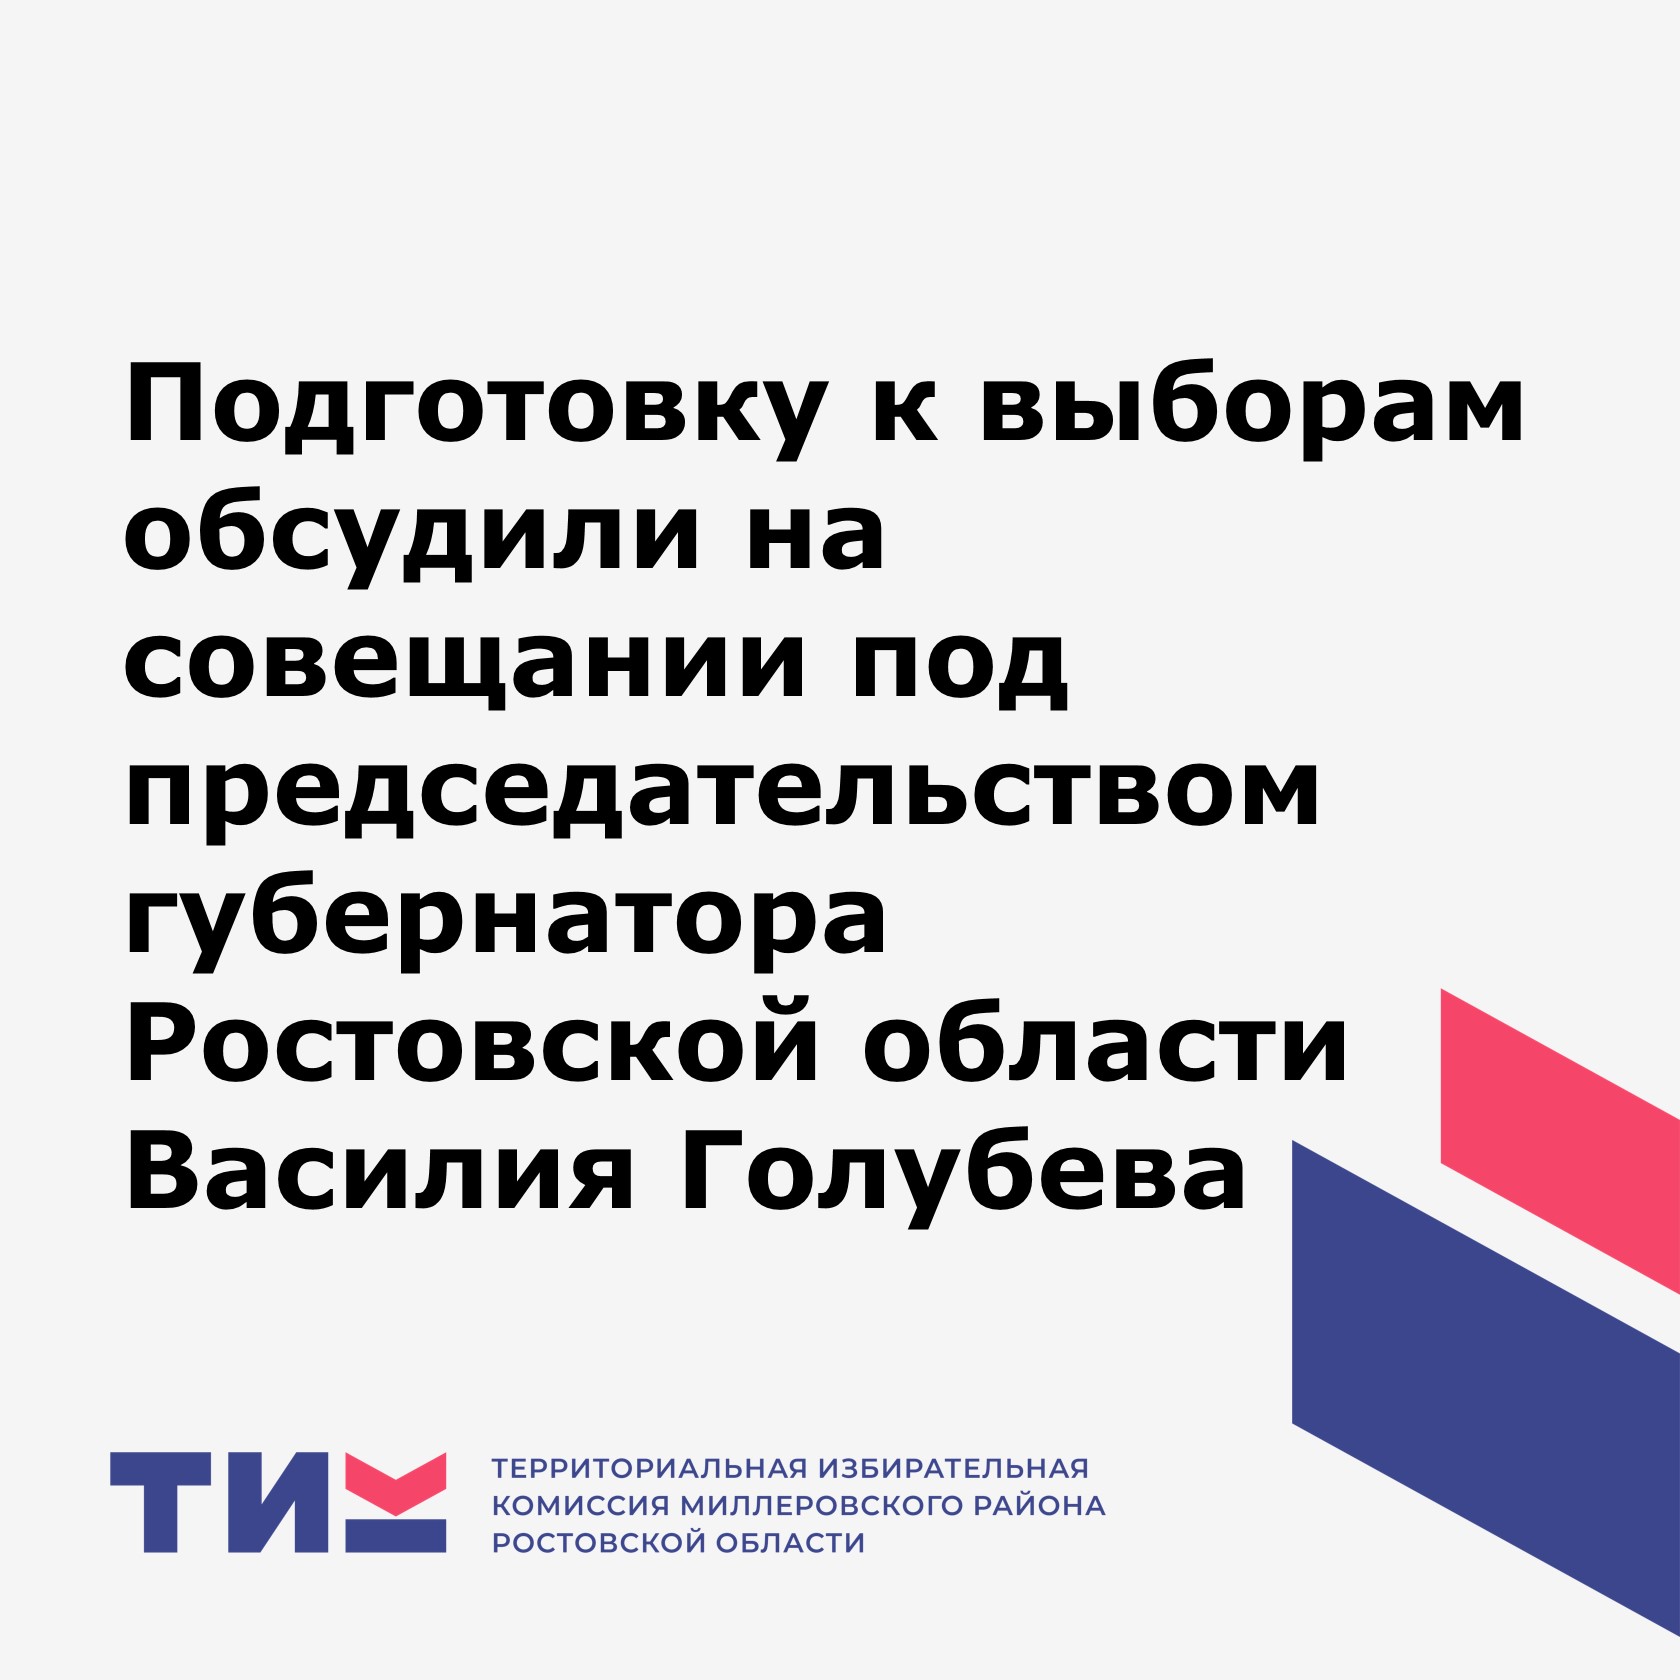 Подготовку к единому дню голосования обсудили на совещании под председательством губернатора Ростовской области Василия Голубева